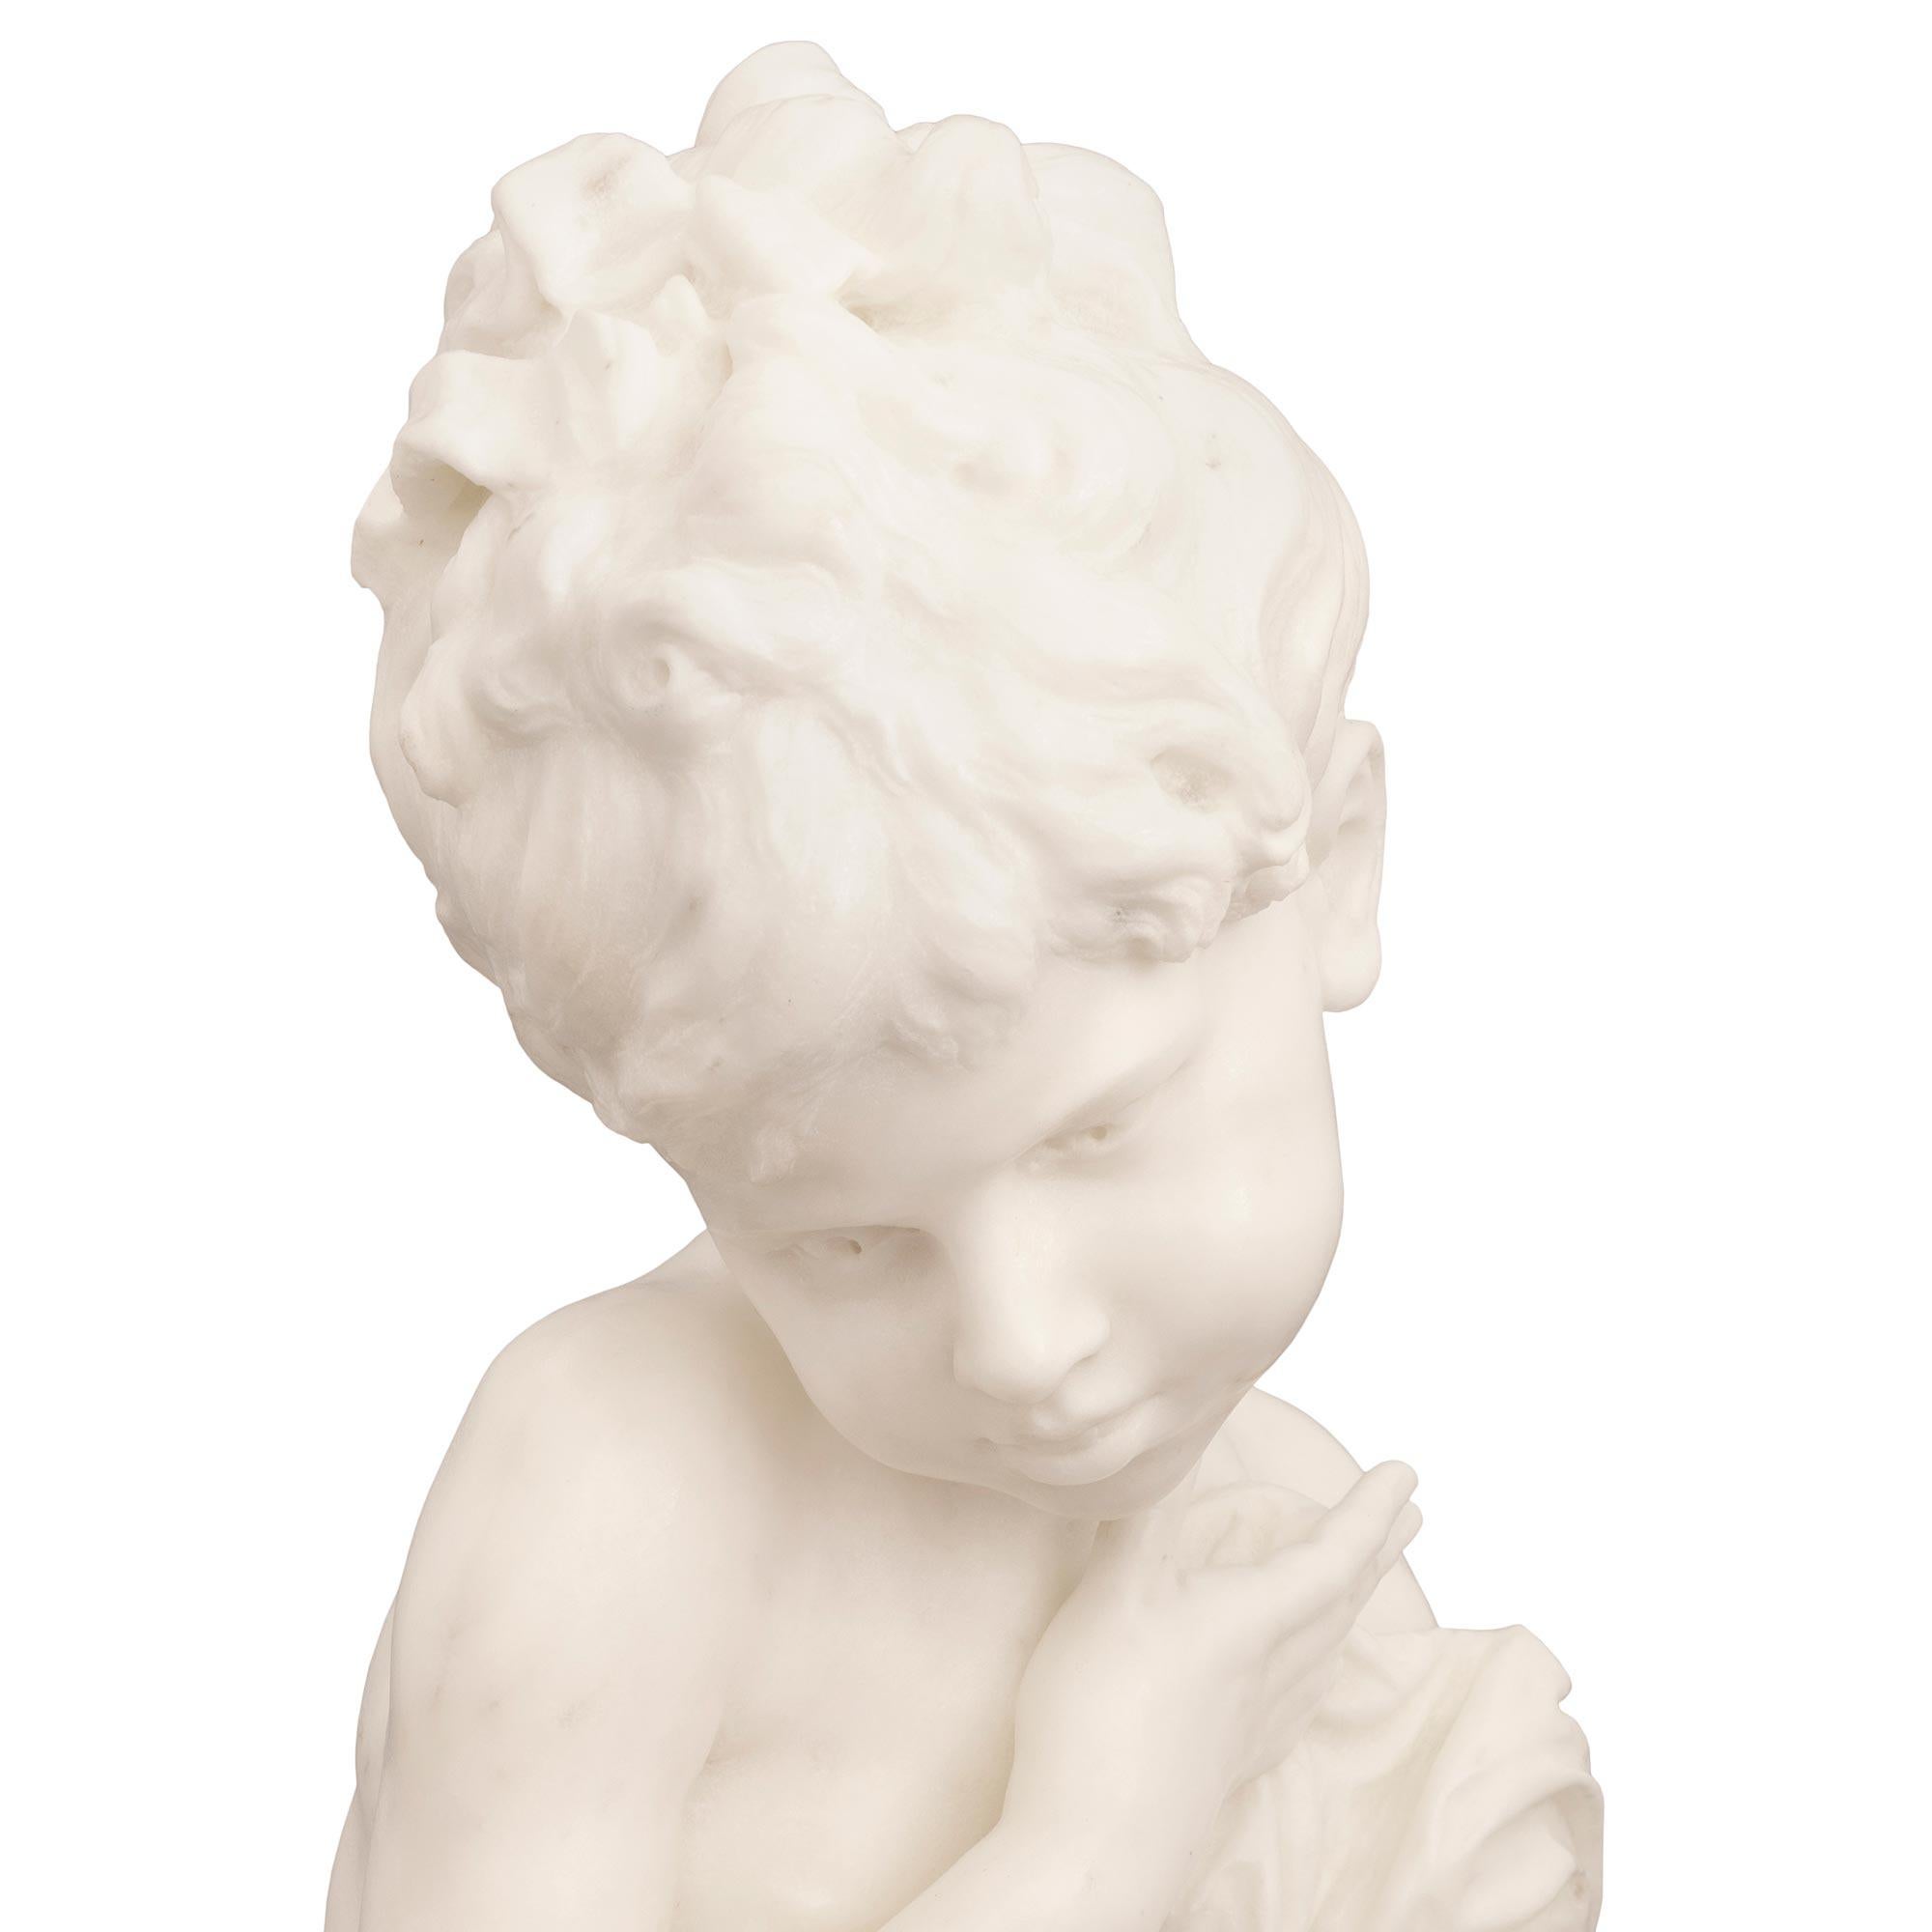 Italian 19th Century White Carrara Marble Statue Signed F. Mariotti Scul For Sale 2